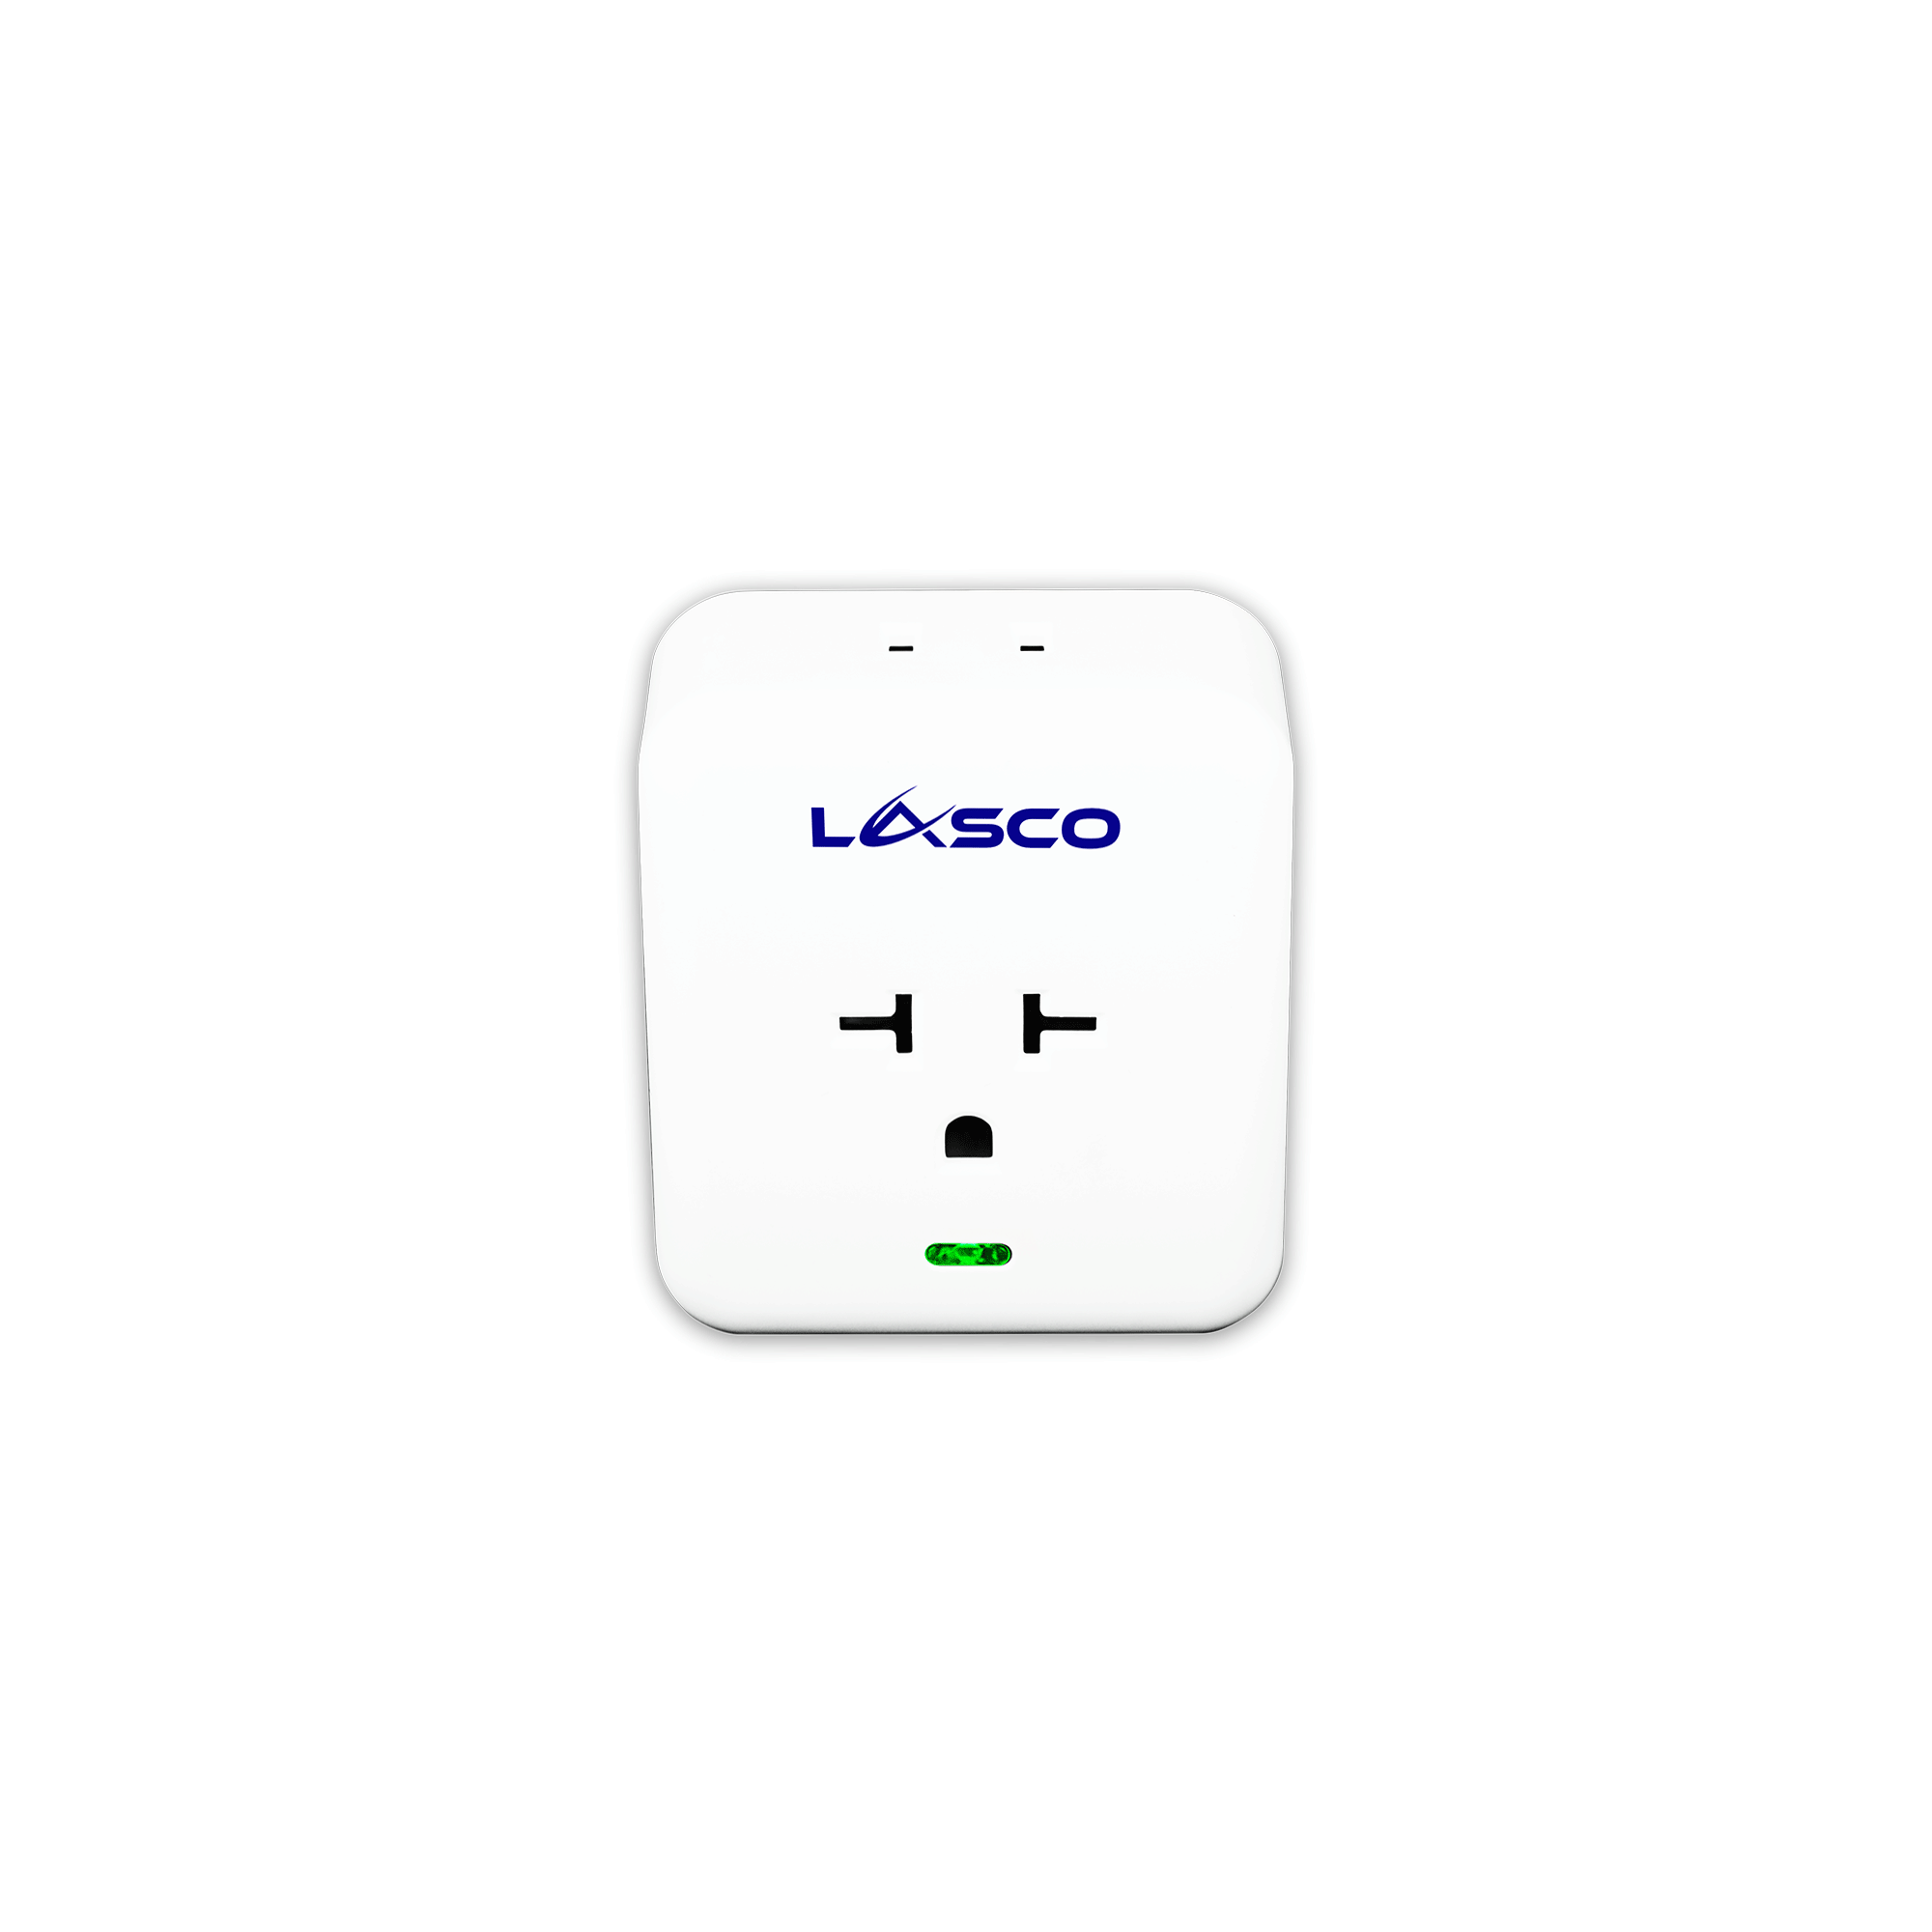 Lasco_0010s_0004_Aircon-Plug-Front